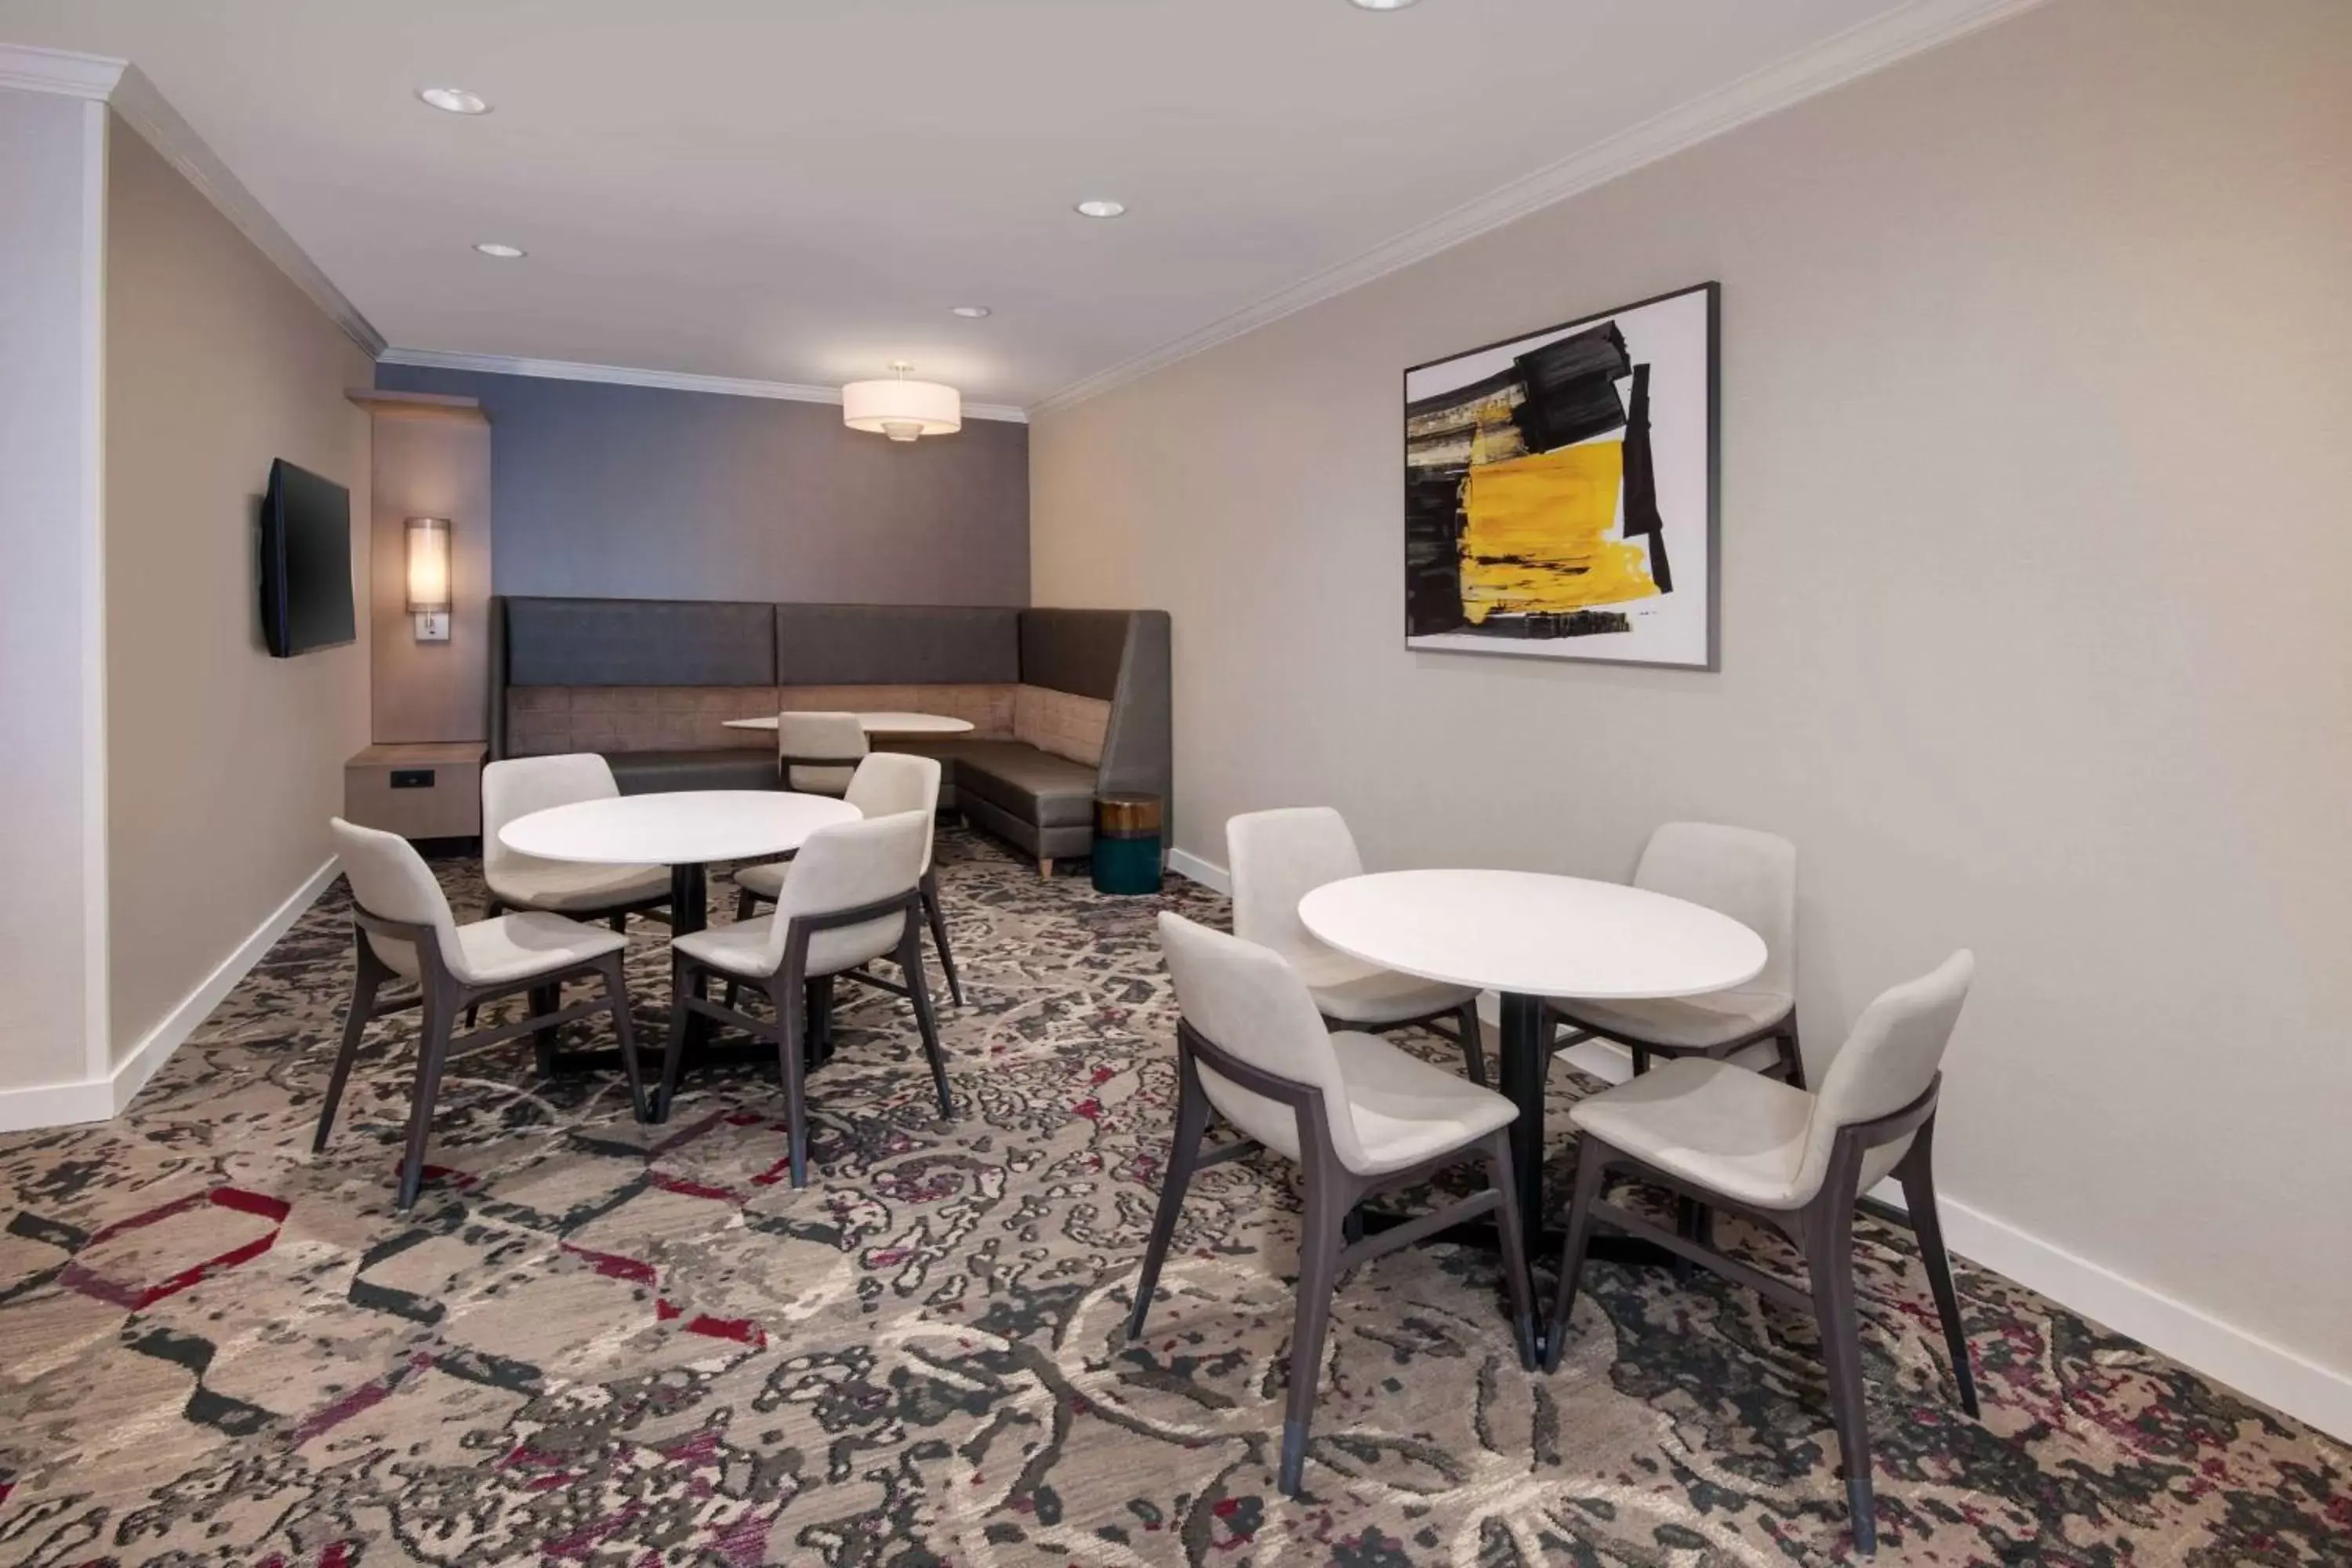 Lobby or reception, Dining Area in Sonesta ES Suites Atlanta Alpharetta North Point Mall